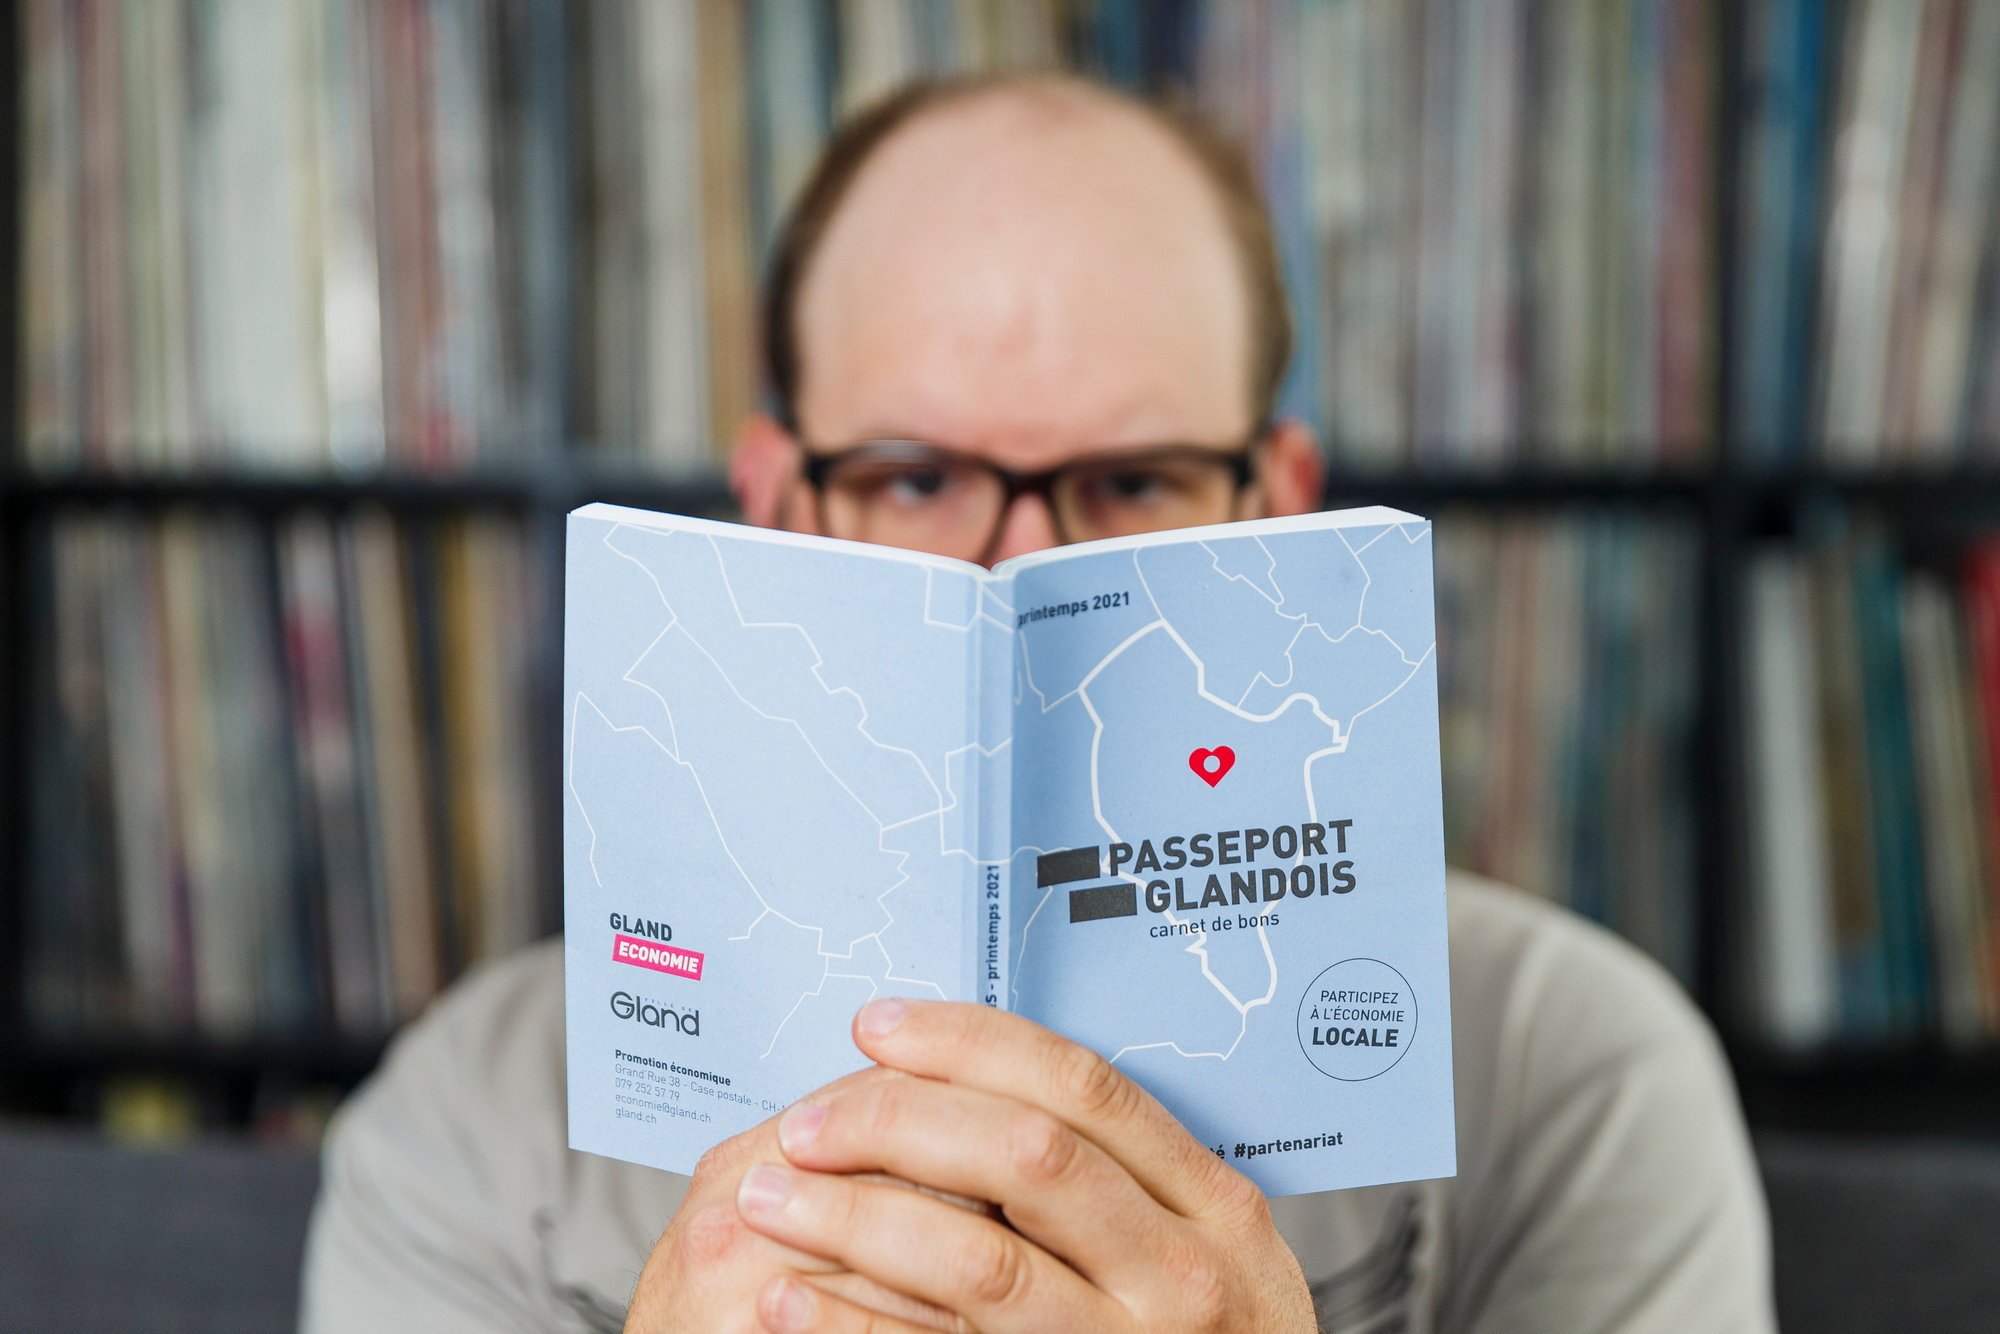 Le passeport glandois a été distribué à tous les ménages glandois.